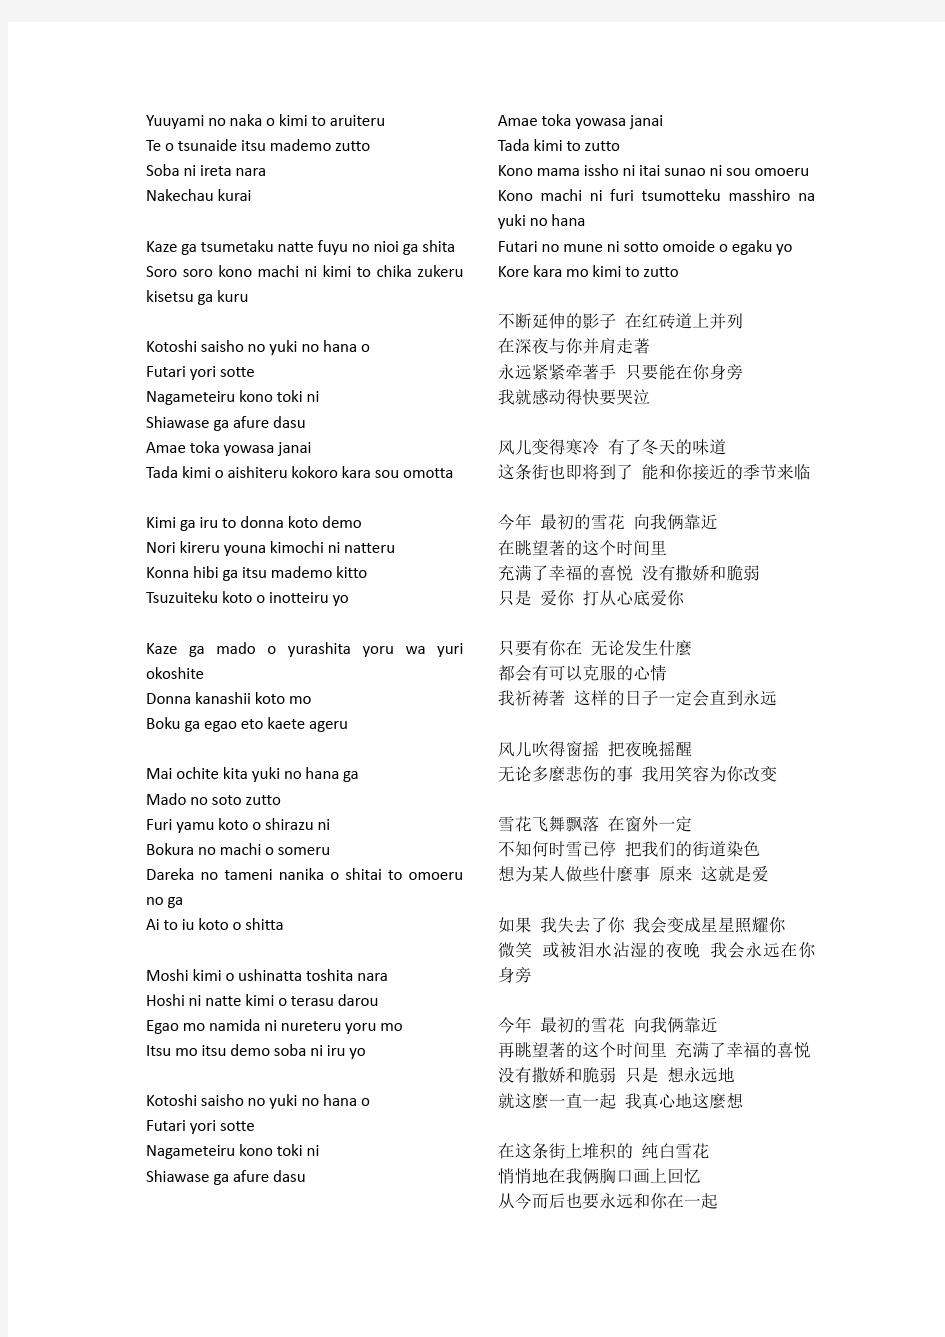 中文经典歌曲 日文原版歌词  中日歌词对照